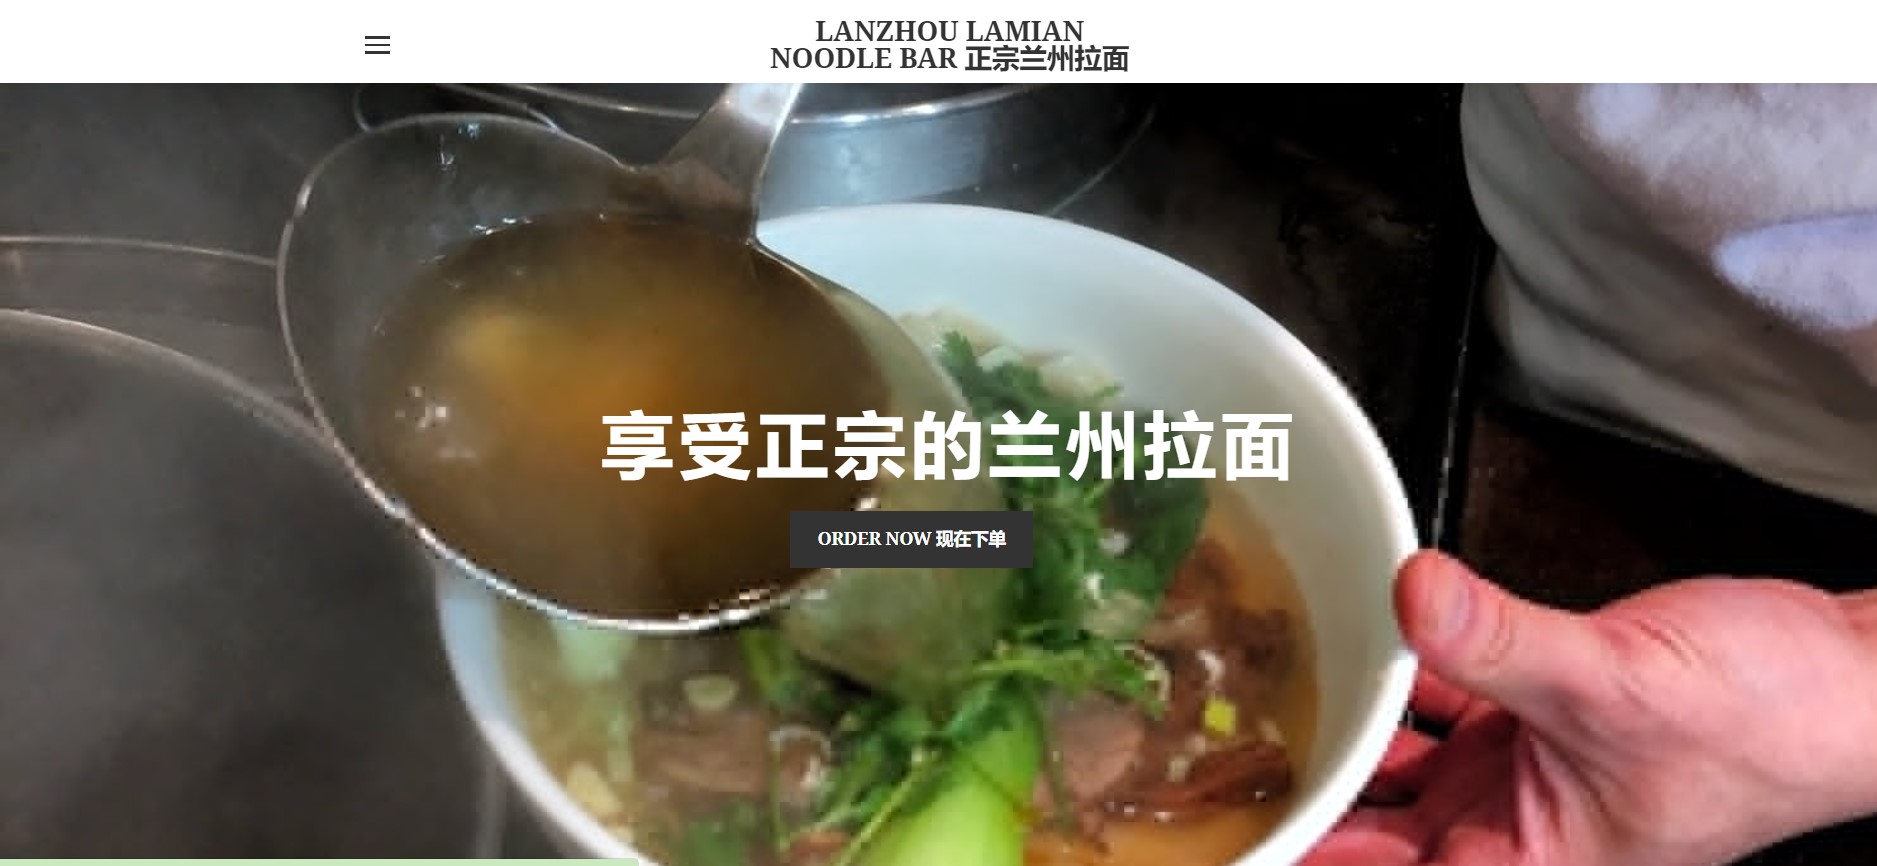 Lanzhou Lamian Noodle bar